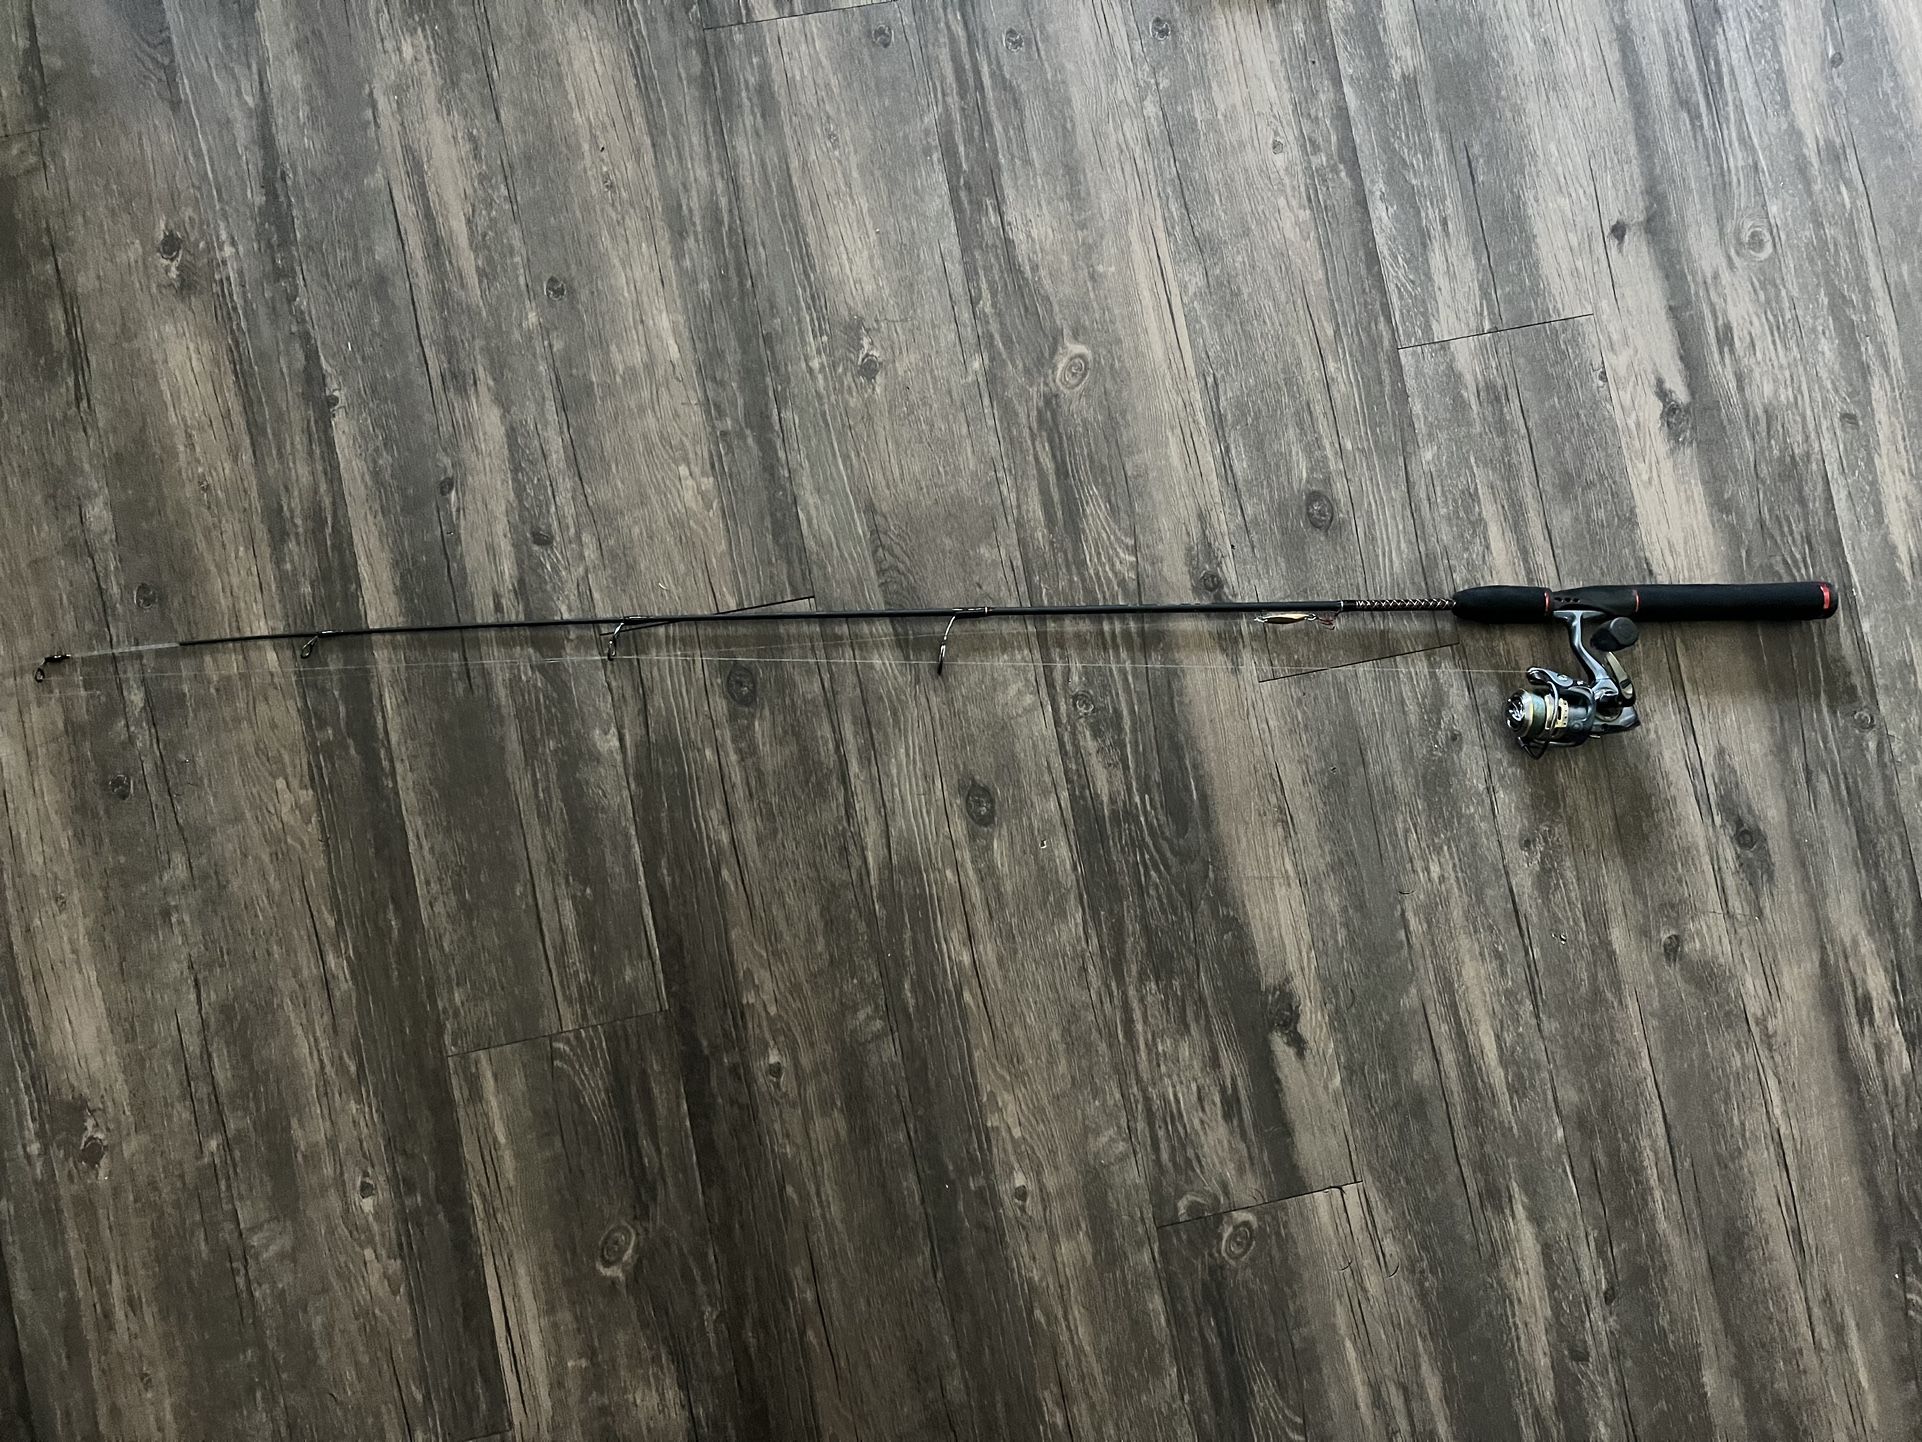 Ultra Light Trout Fishing Rod Combo